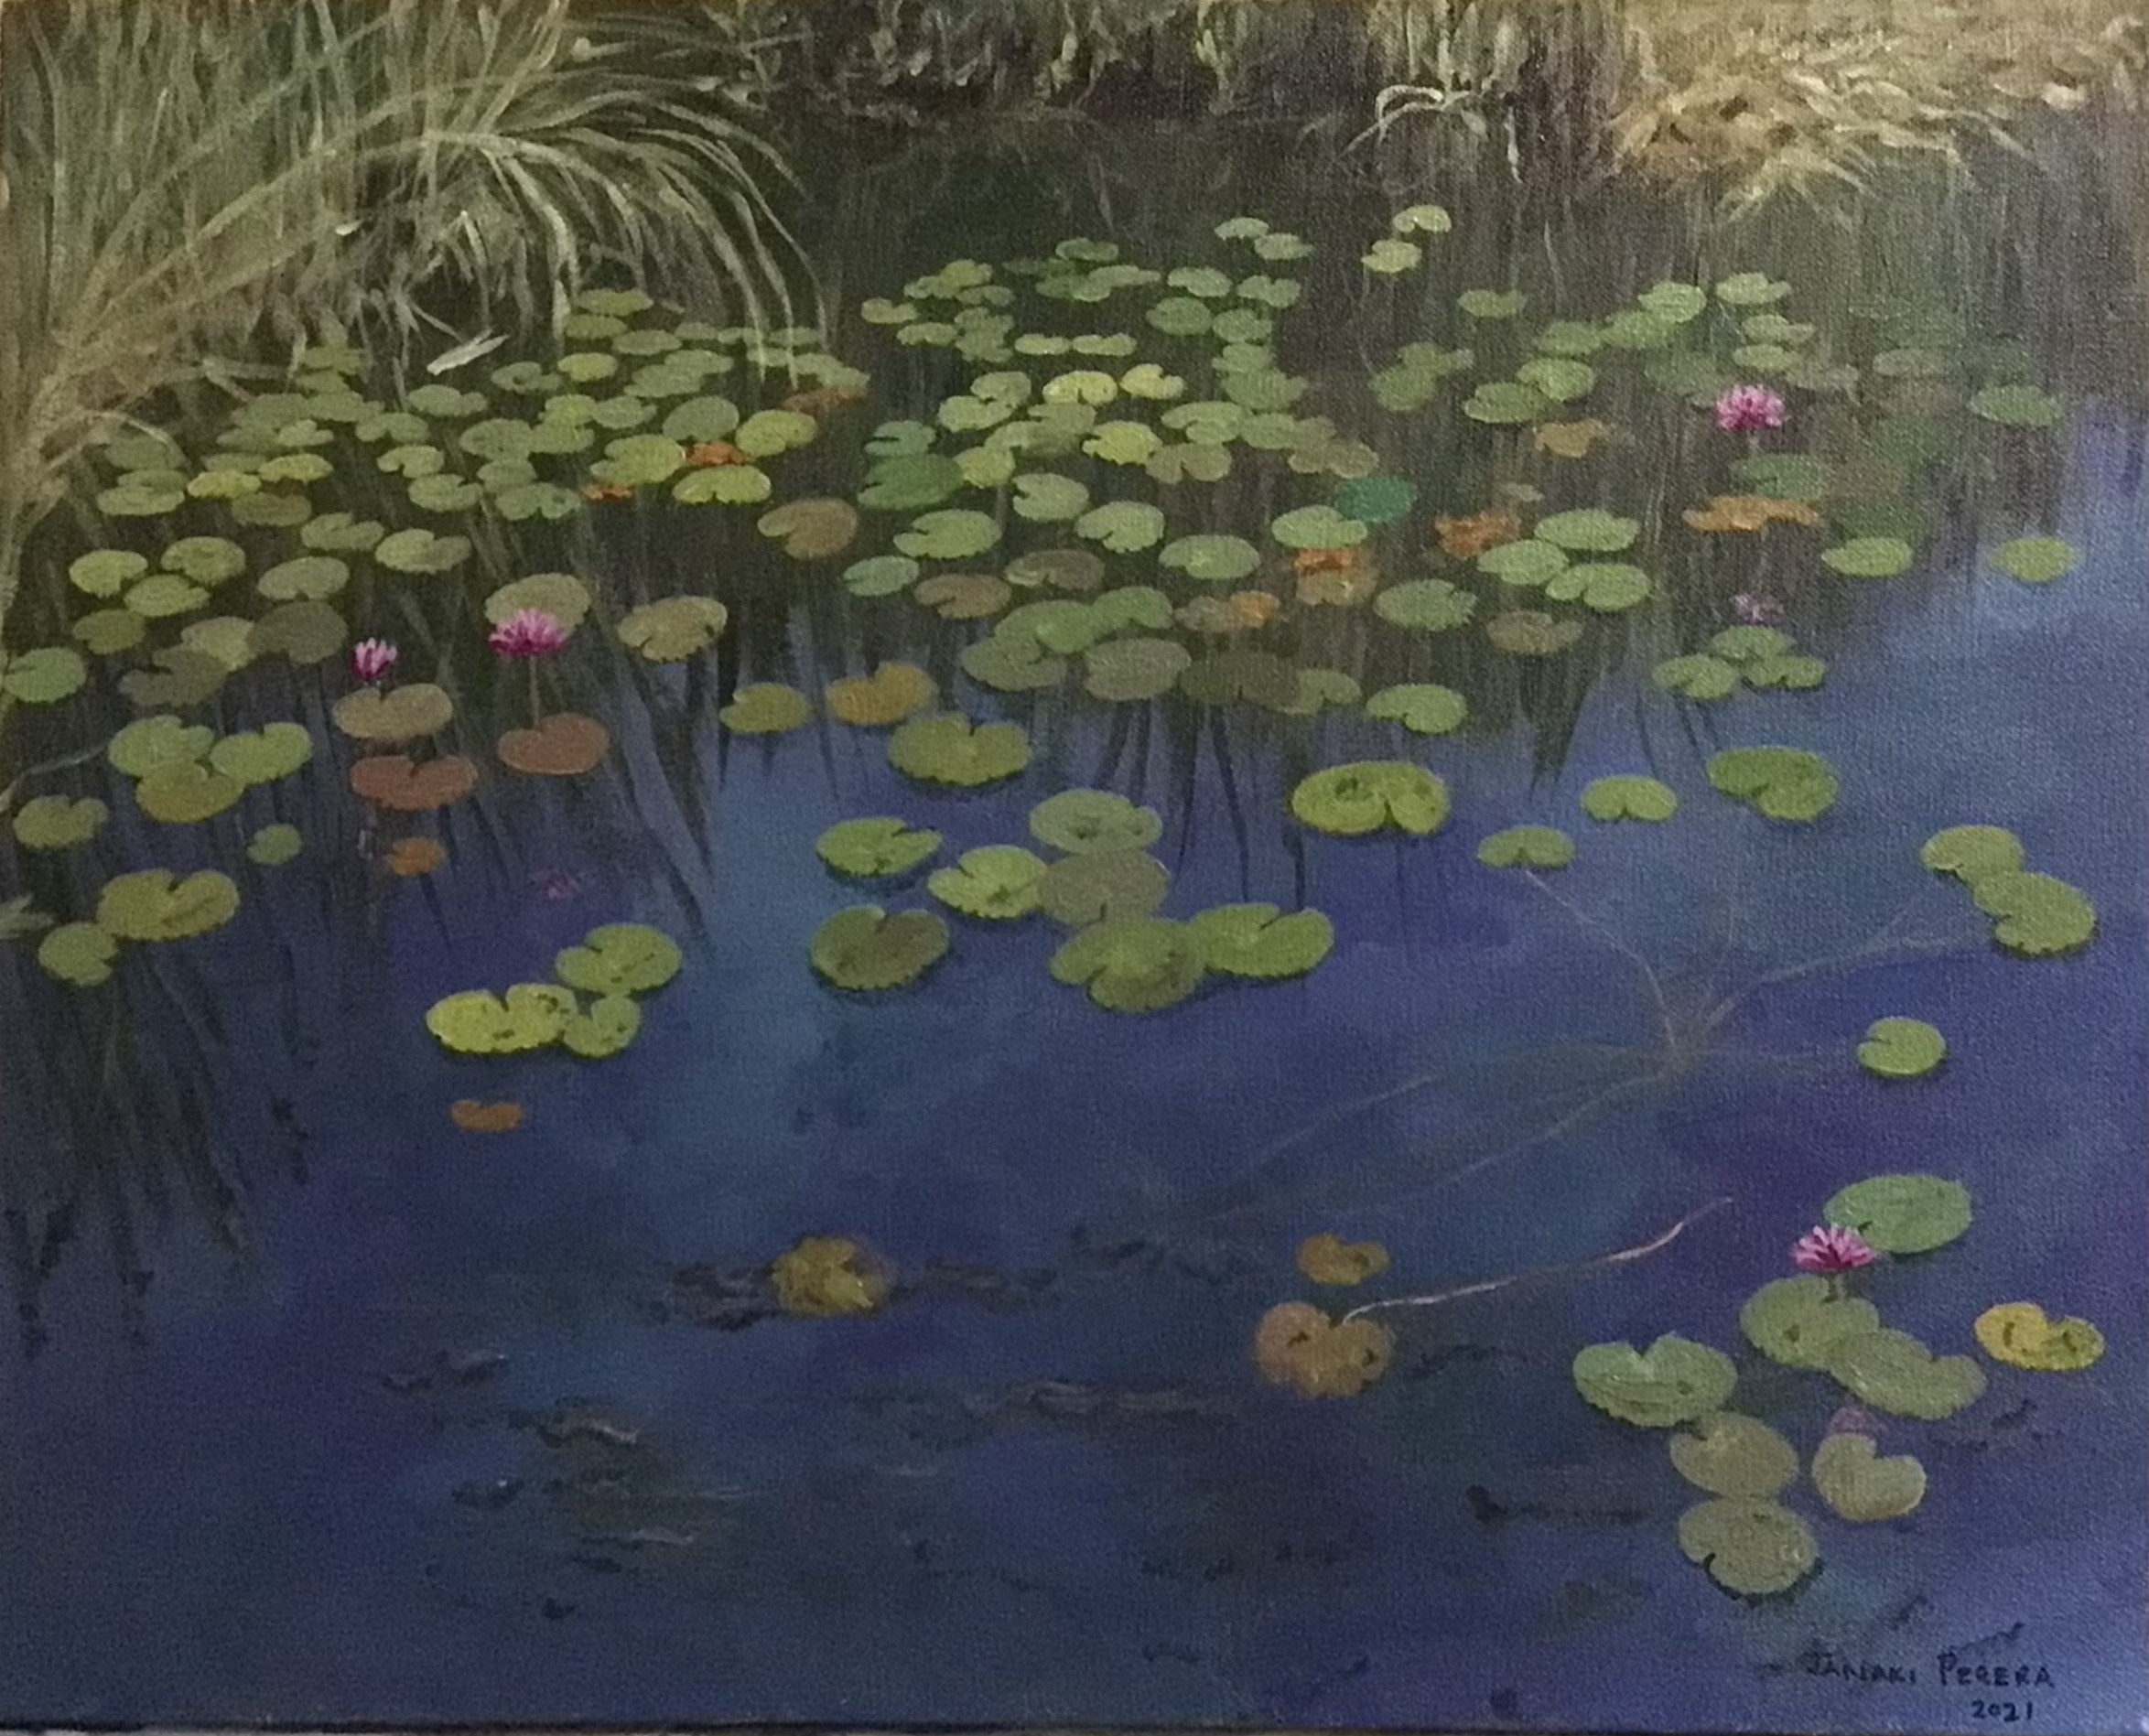 Lotus pond by Janaki Perera